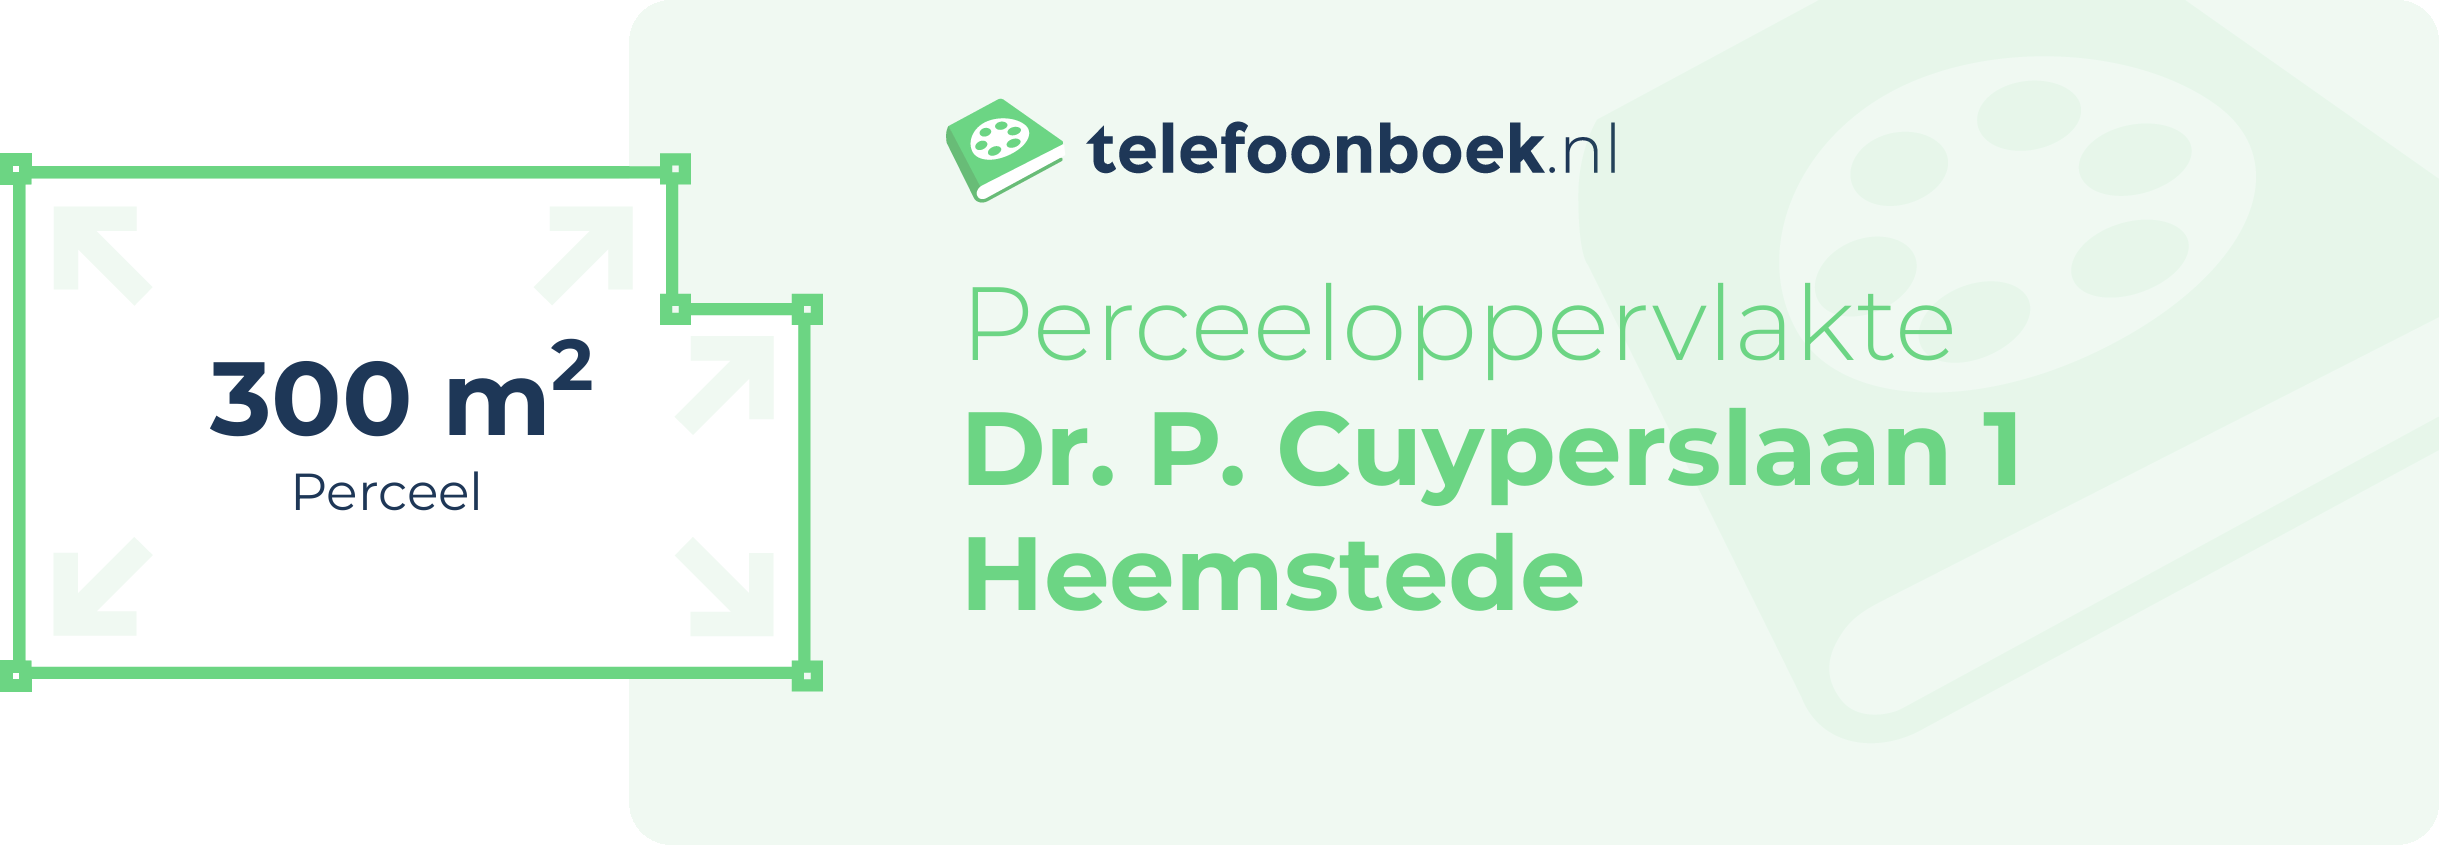 Perceeloppervlakte Dr. P. Cuyperslaan 1 Heemstede